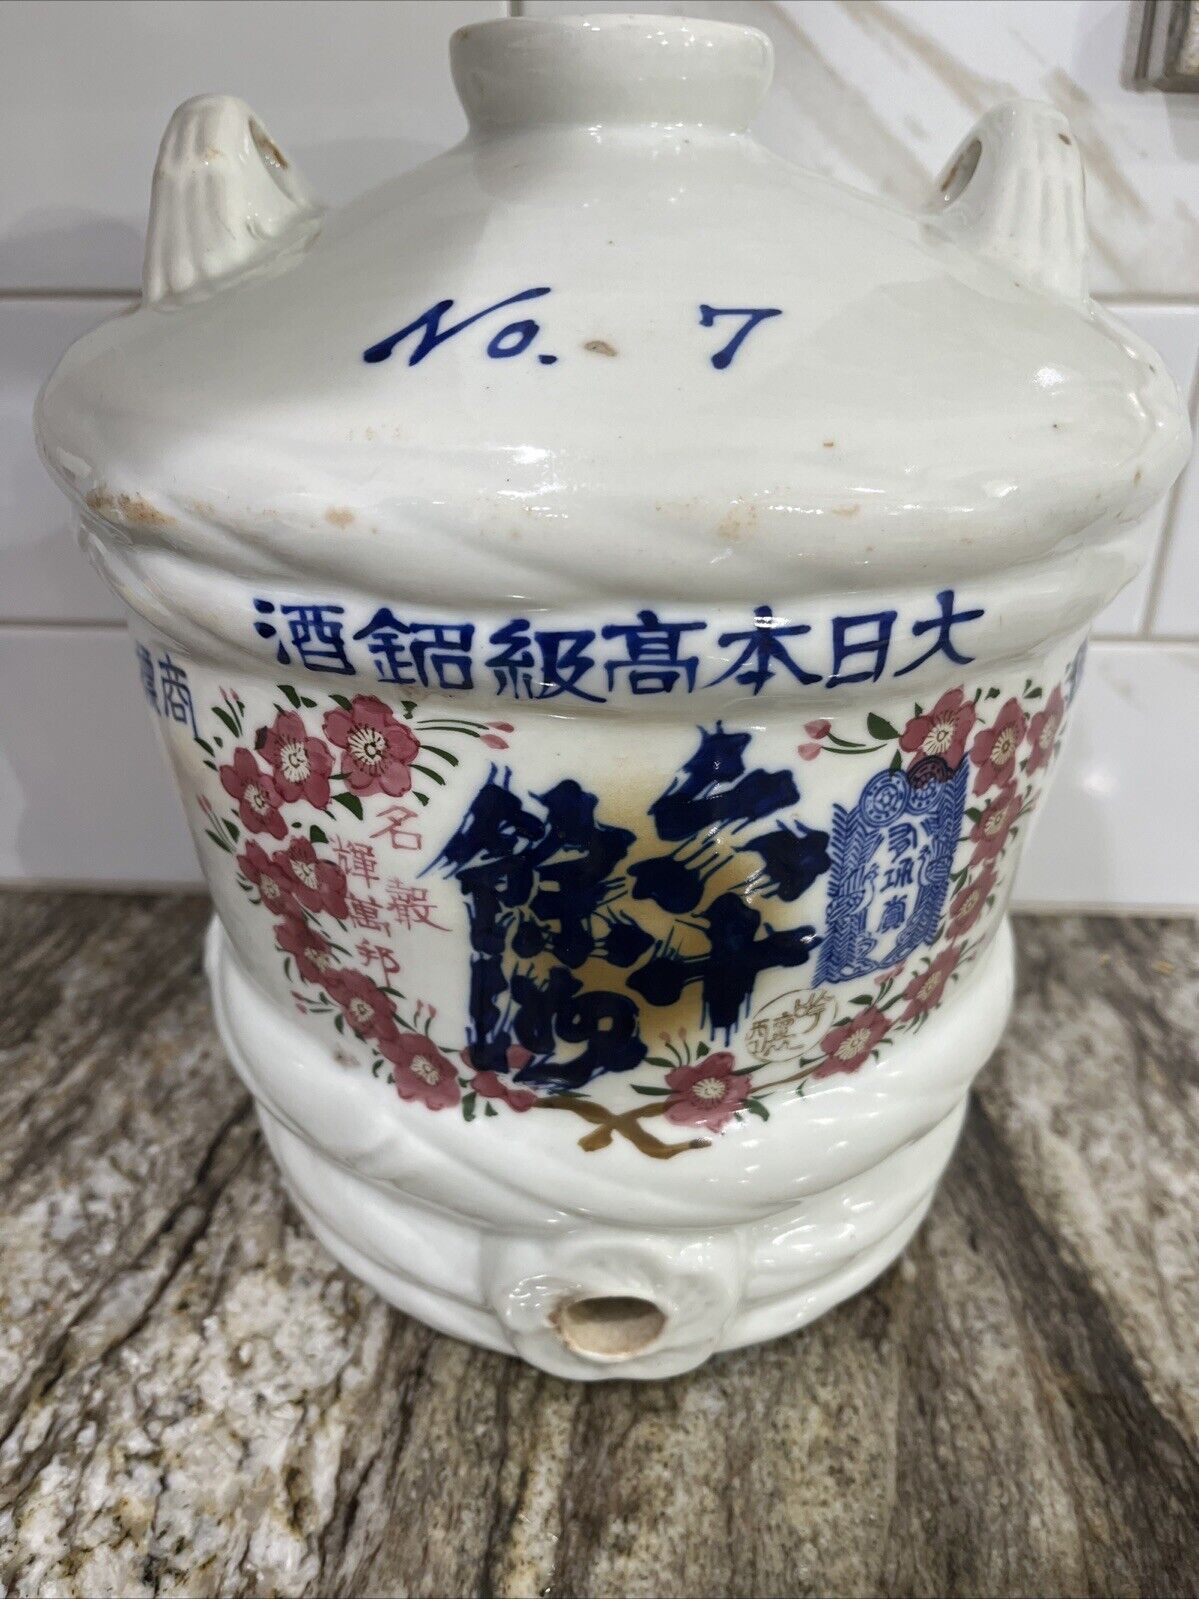 Rare Large Antique Sake Wine Barrel Jug Japanese Glazed Ceramic Porcelain